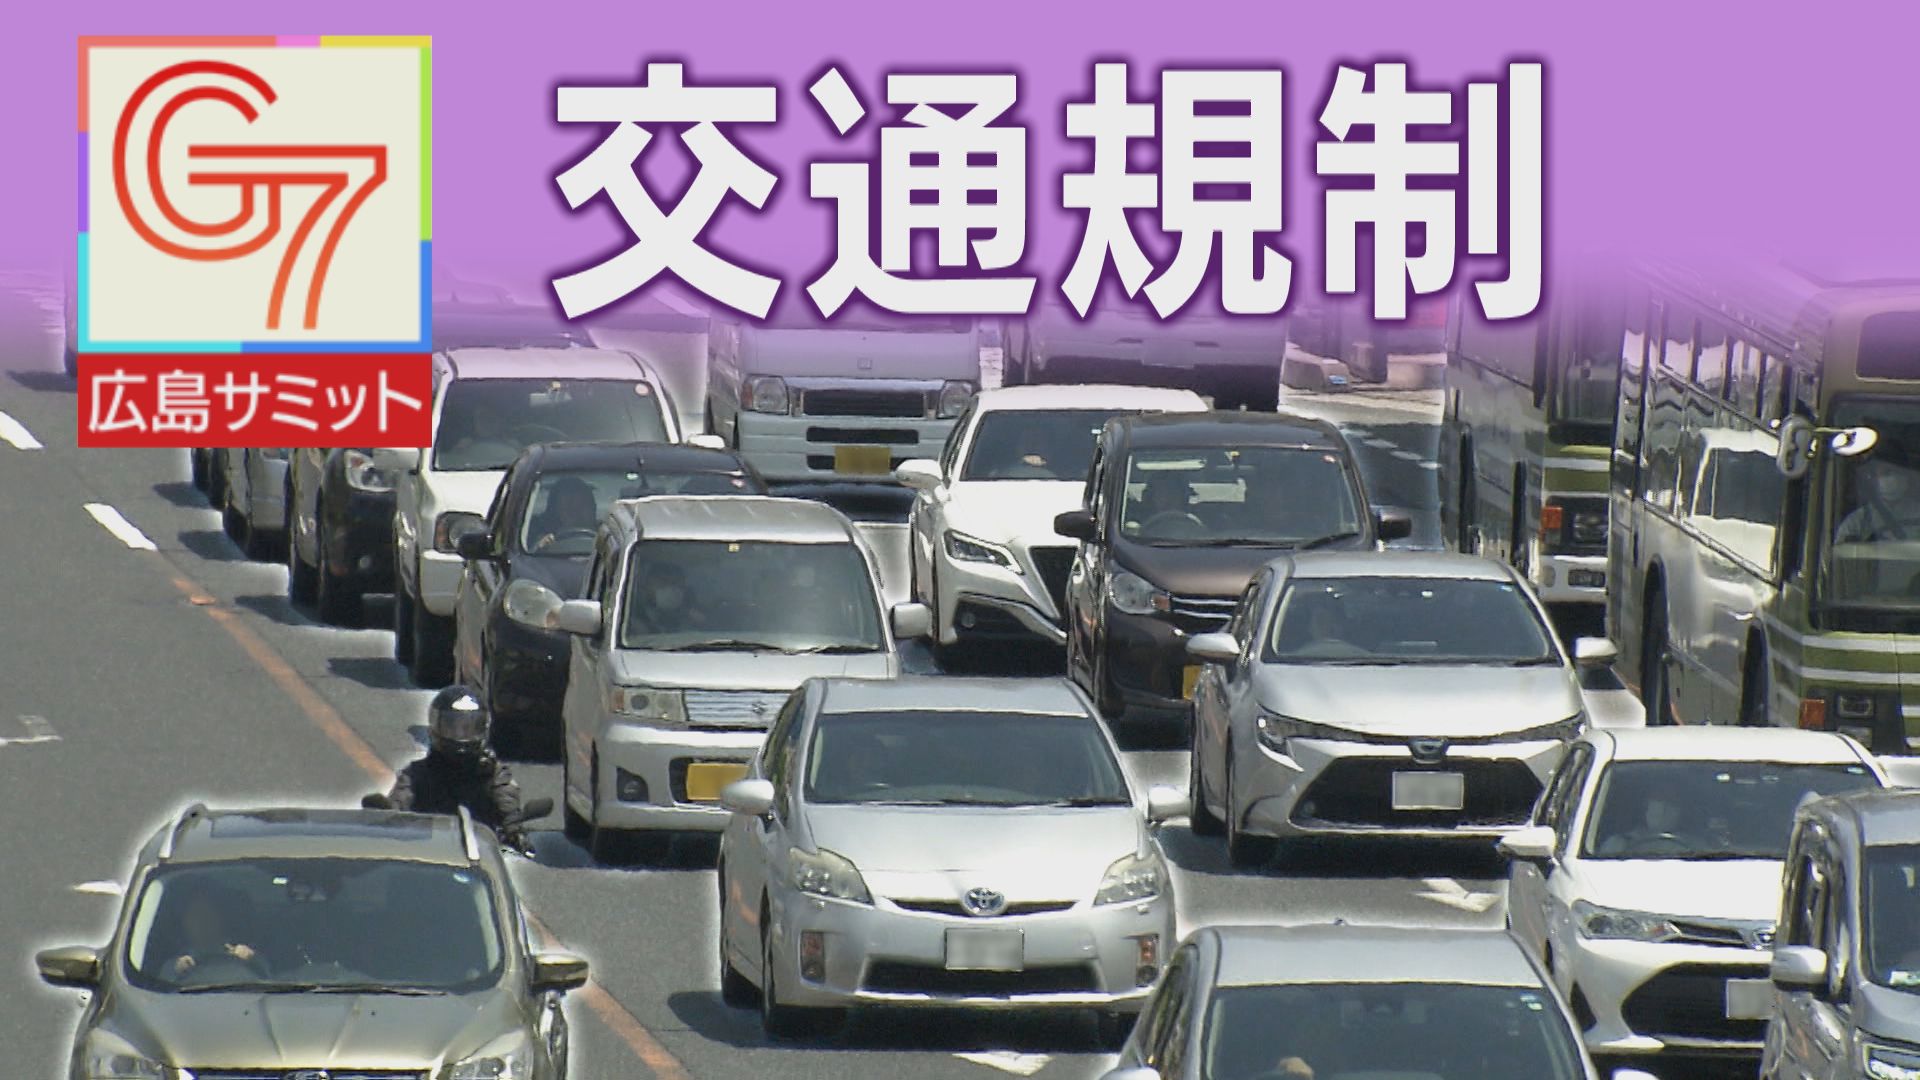 【随時更新】G7広島 交通規制 21日の通行止め(一般/高速道路)